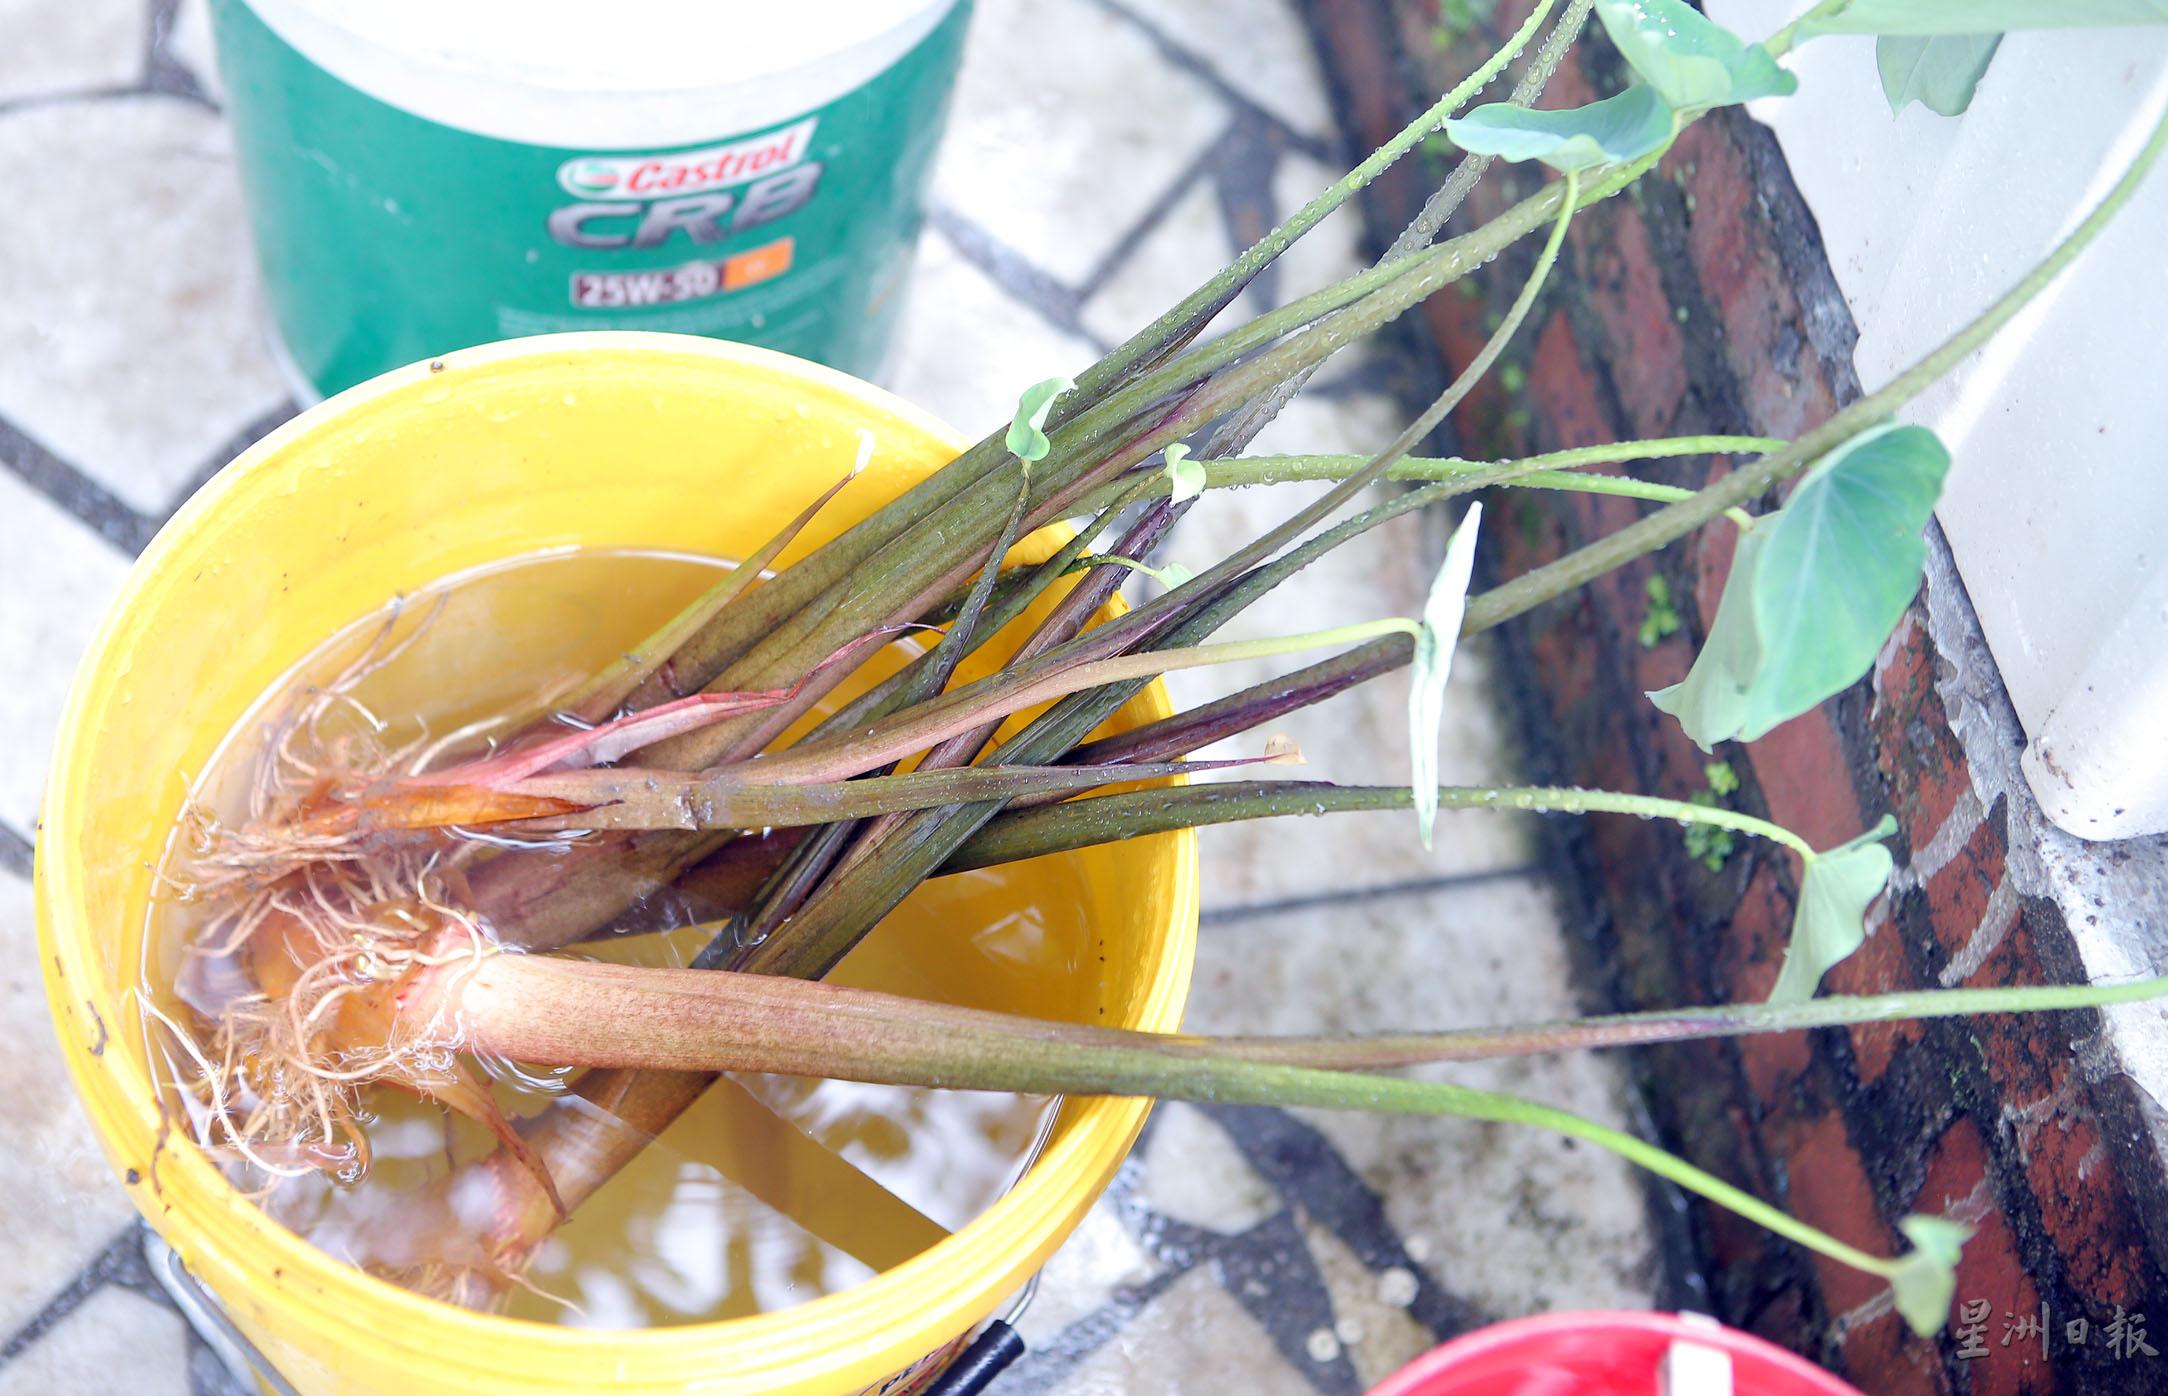 拔起来的芋秧泡在水中，保持湿润，随时可以再种。